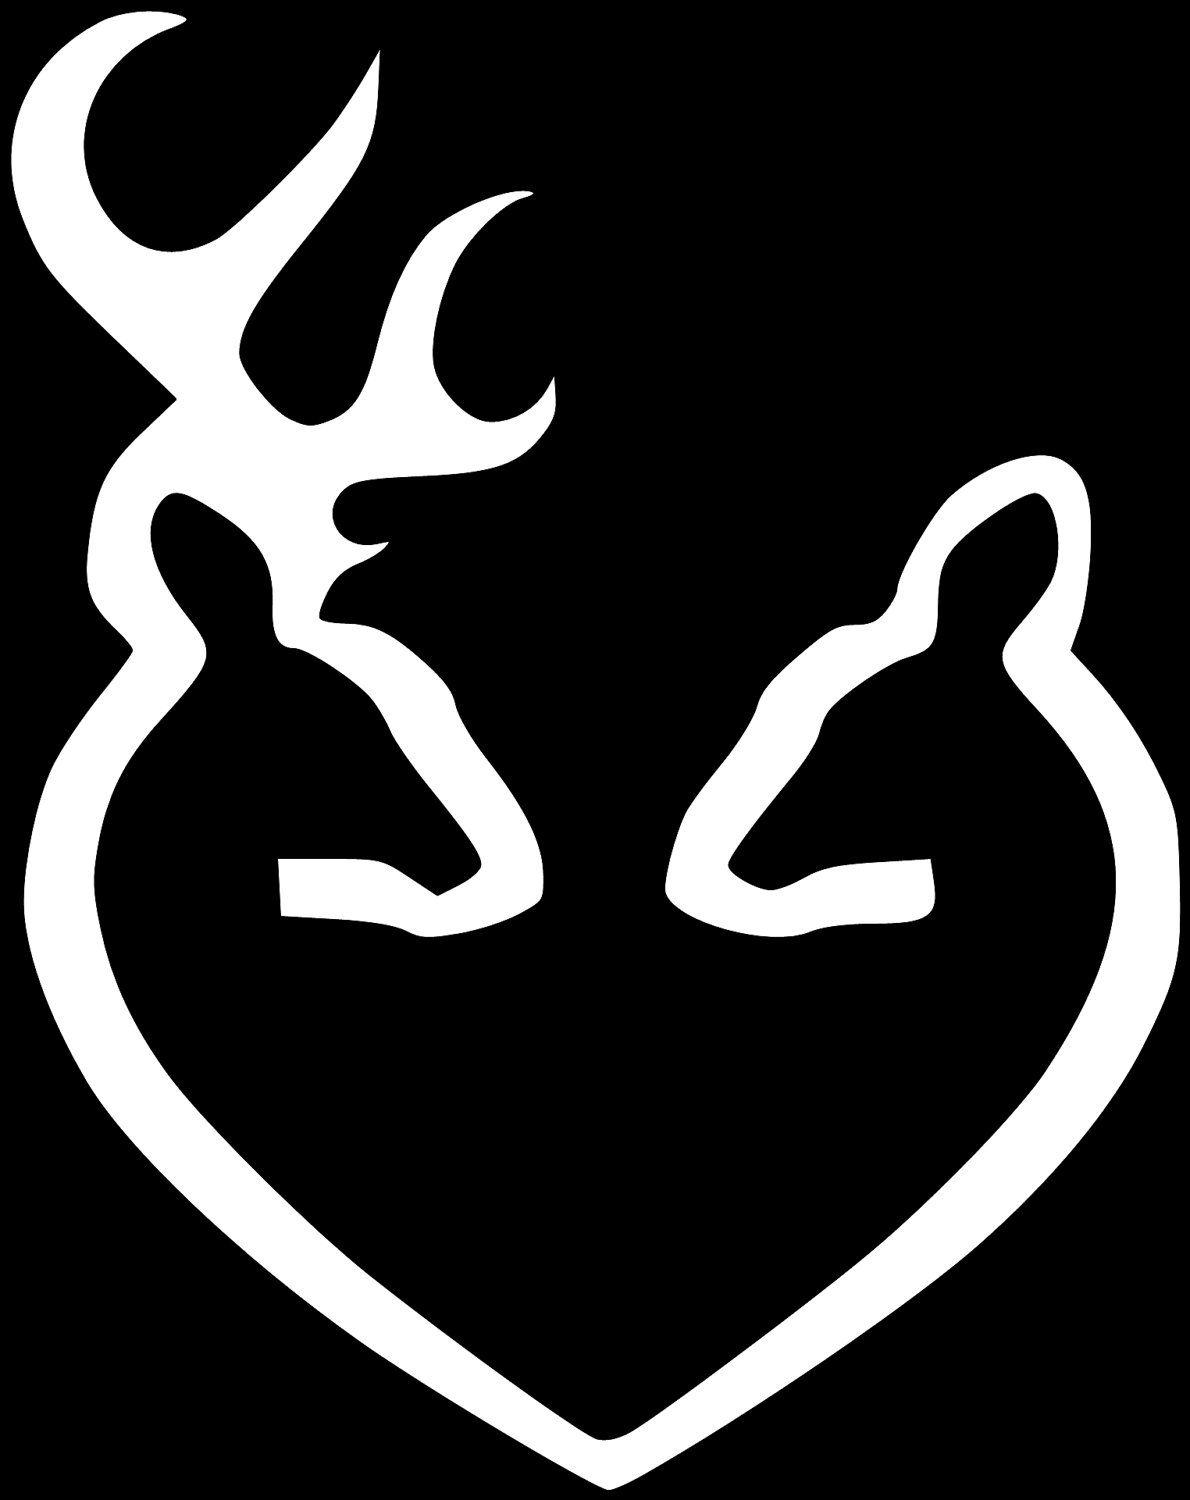 White Browning Logo - Free Browning Symbol, Download Free Clip Art, Free Clip Art